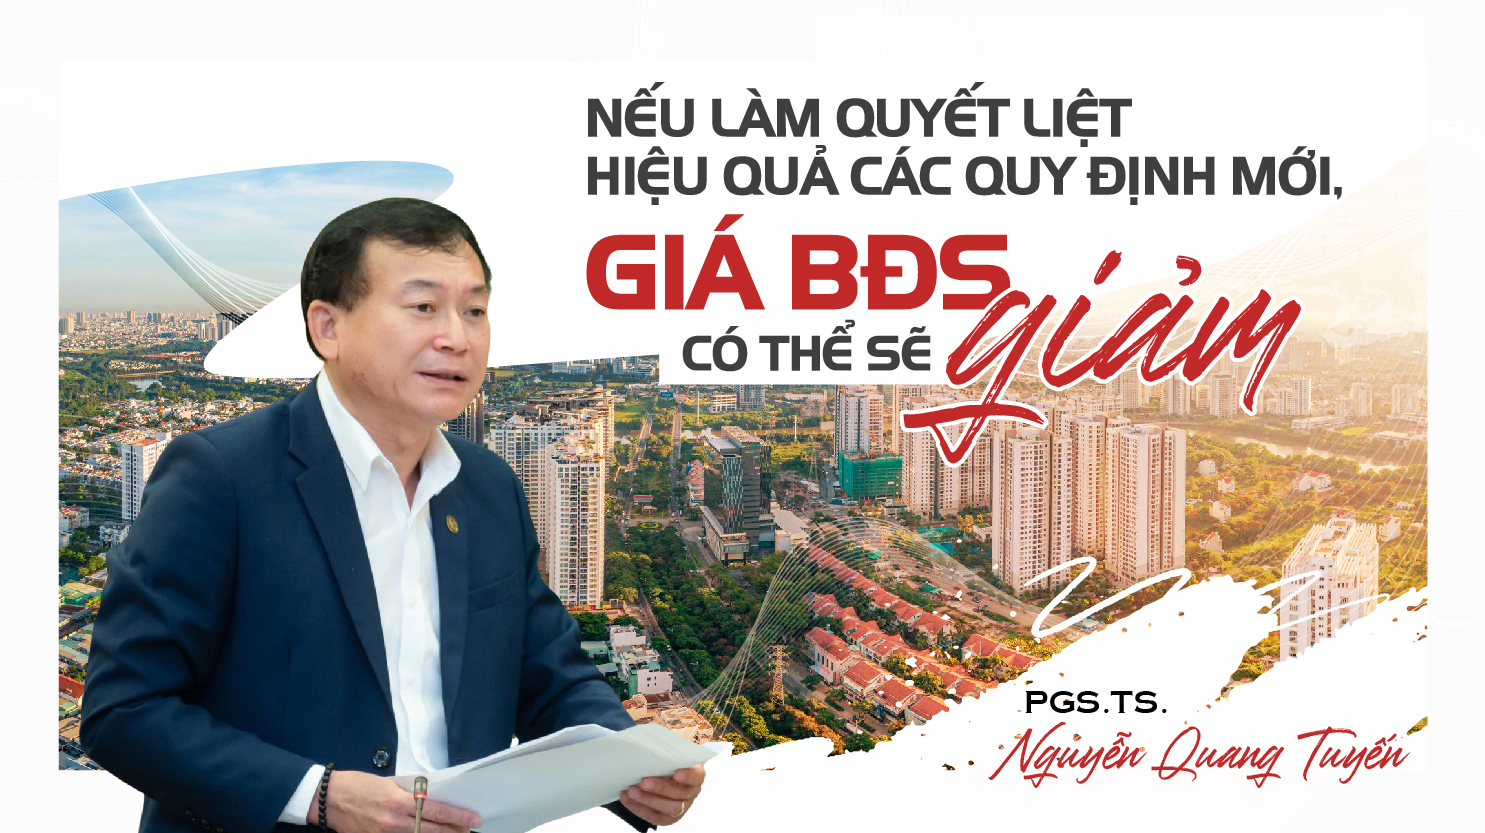 PGS. TS. Nguyễn Quang Tuyến: "Nếu làm quyết liệt, hiệu quả các quy định mới, giá bất động sản có thể sẽ giảm"